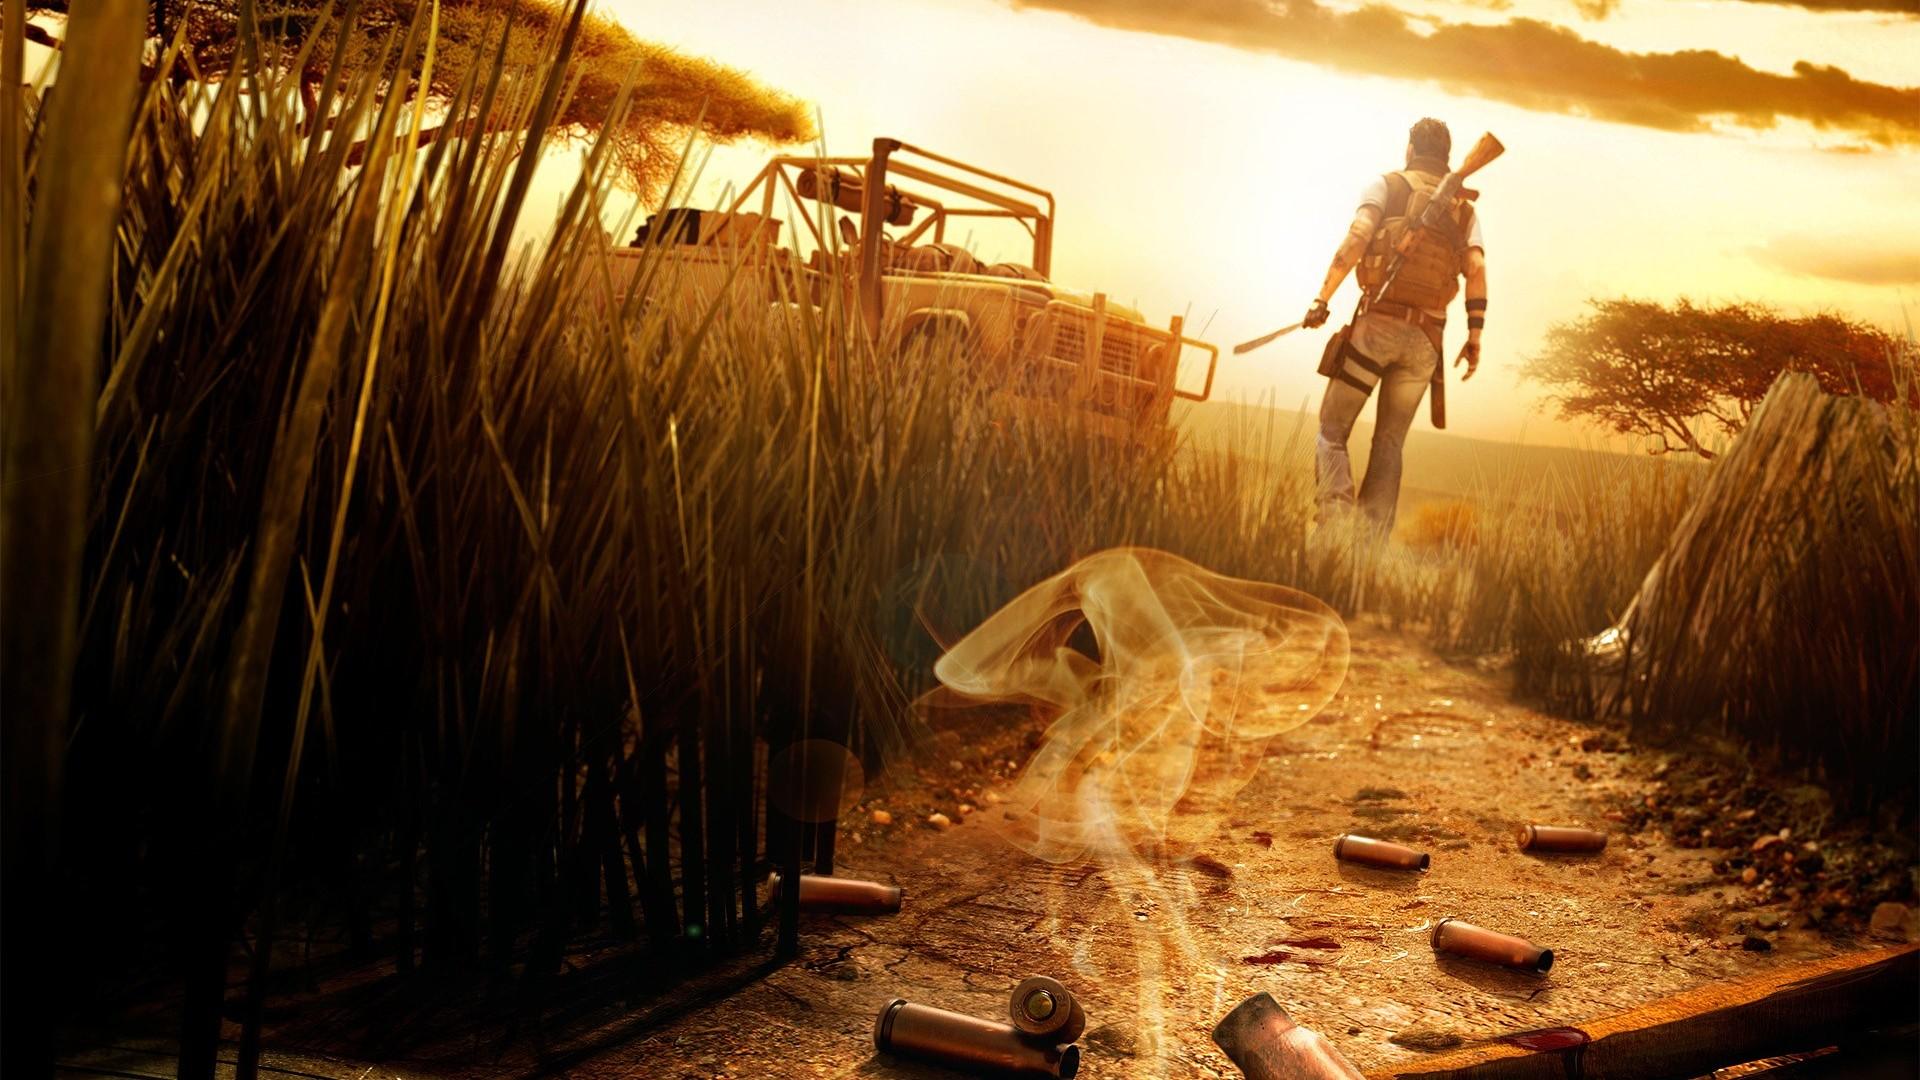 Far Cry 3 Wallpapers - WallpaperSafari